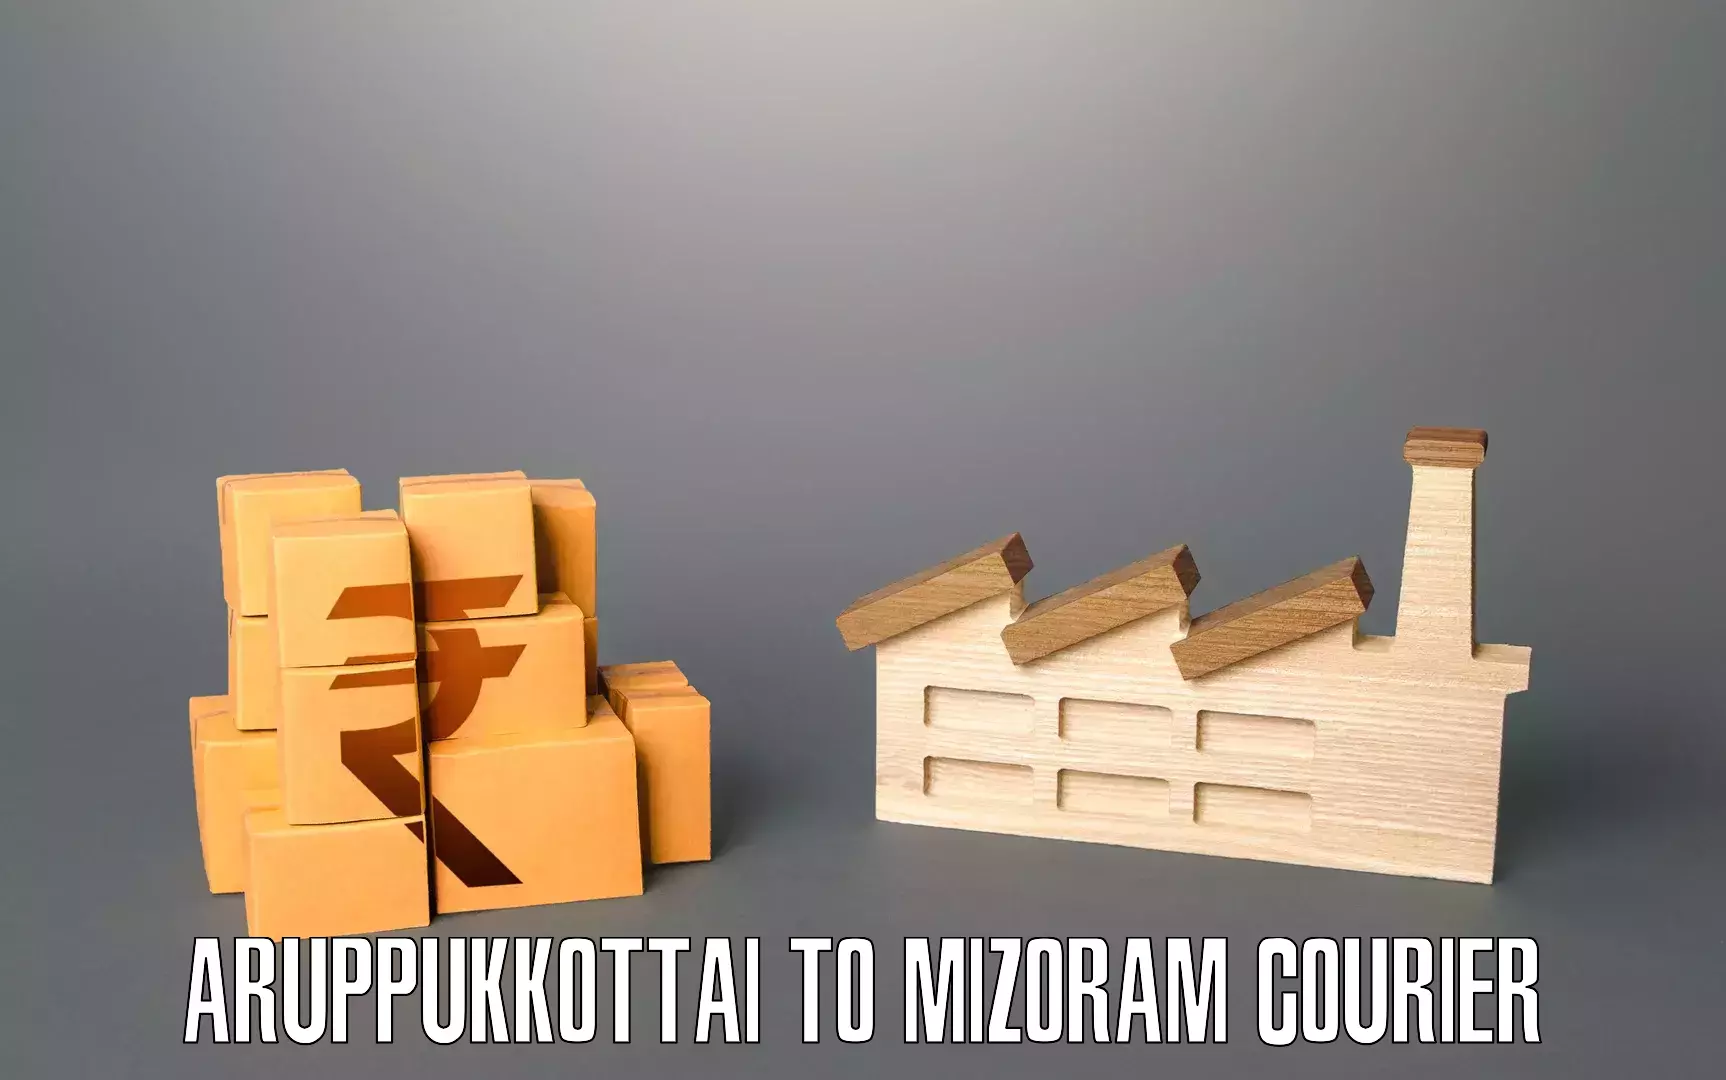 Furniture transport professionals Aruppukkottai to Mizoram